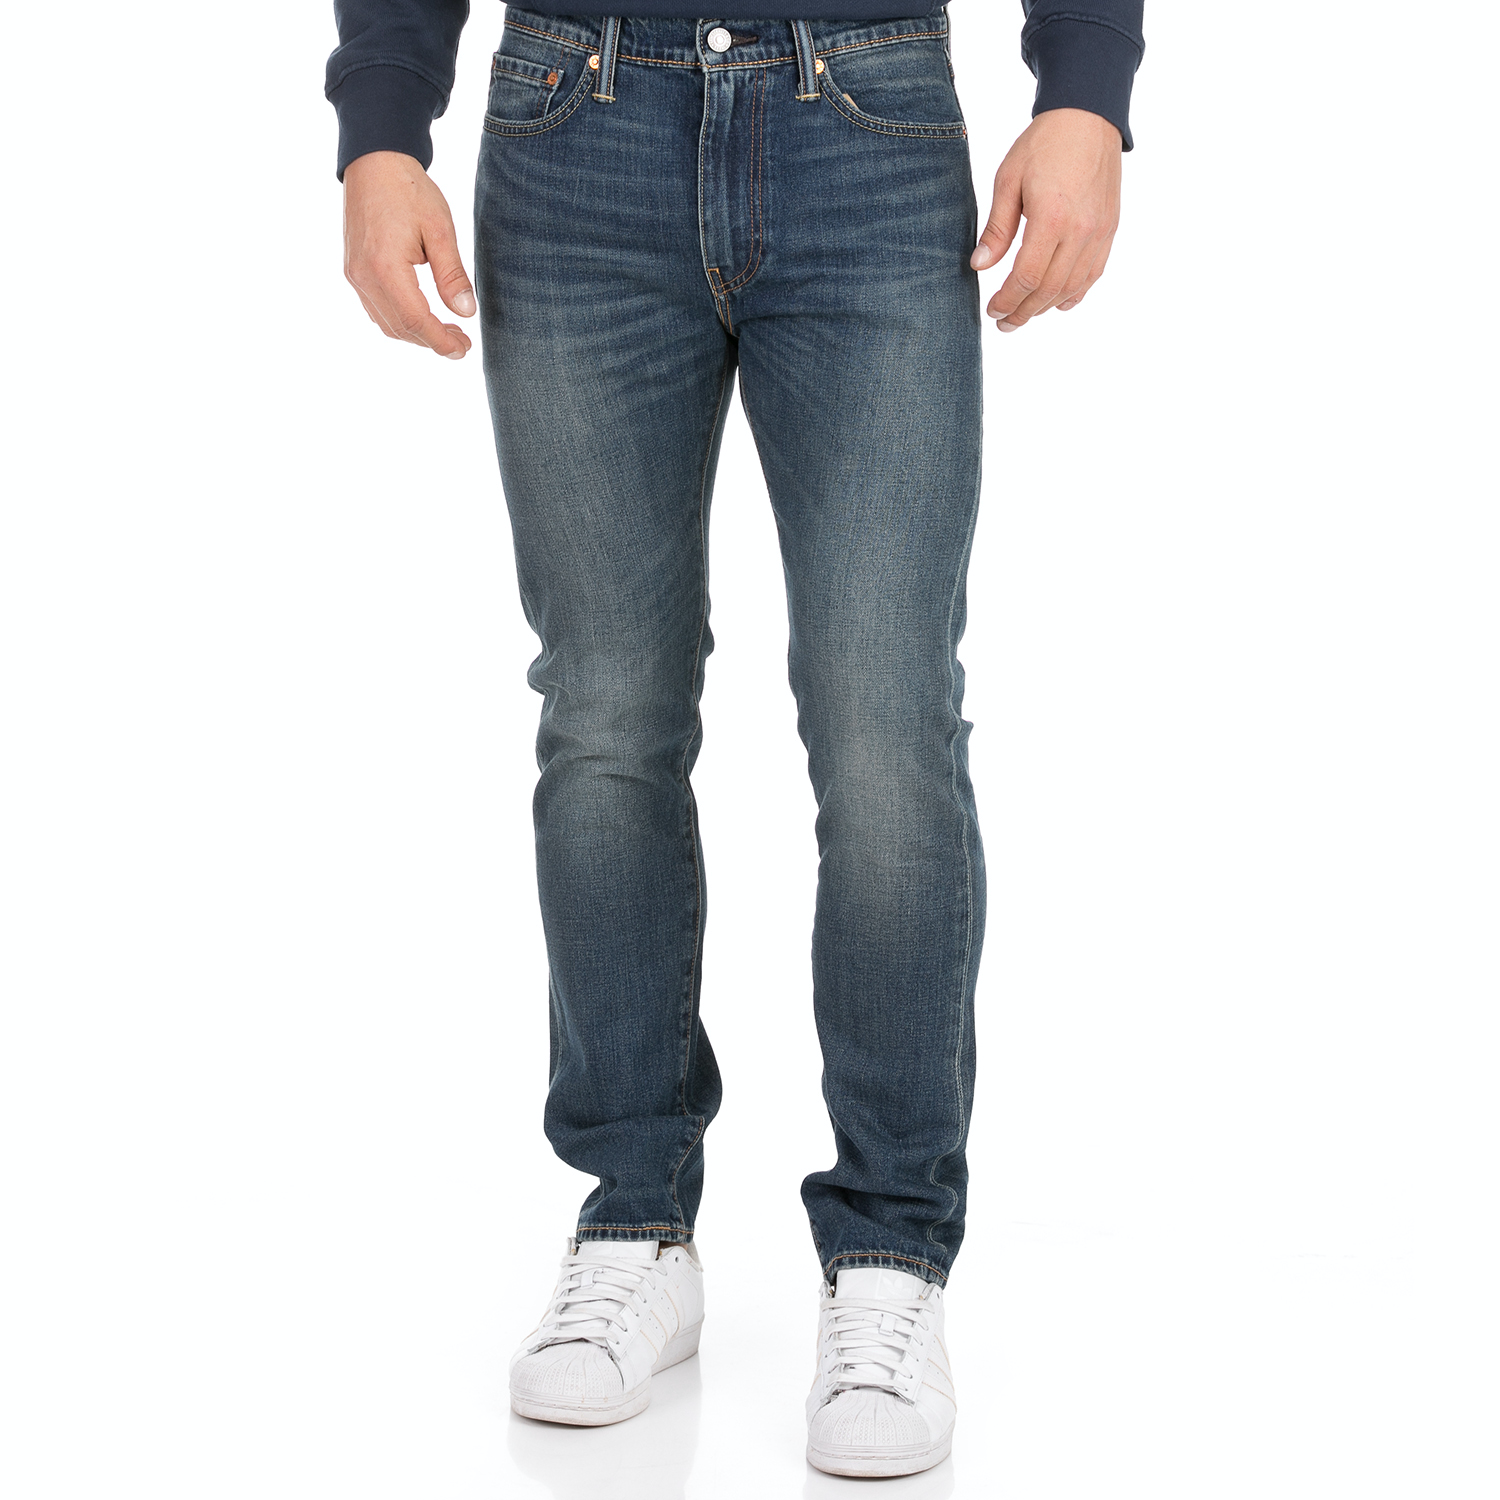 Ανδρικά/Ρούχα/Τζίν/Skinny LEVI'S - Ανδρικό jean παντελόνι LEVI'S 510 SKINNY MADISON SQUARE μπλε